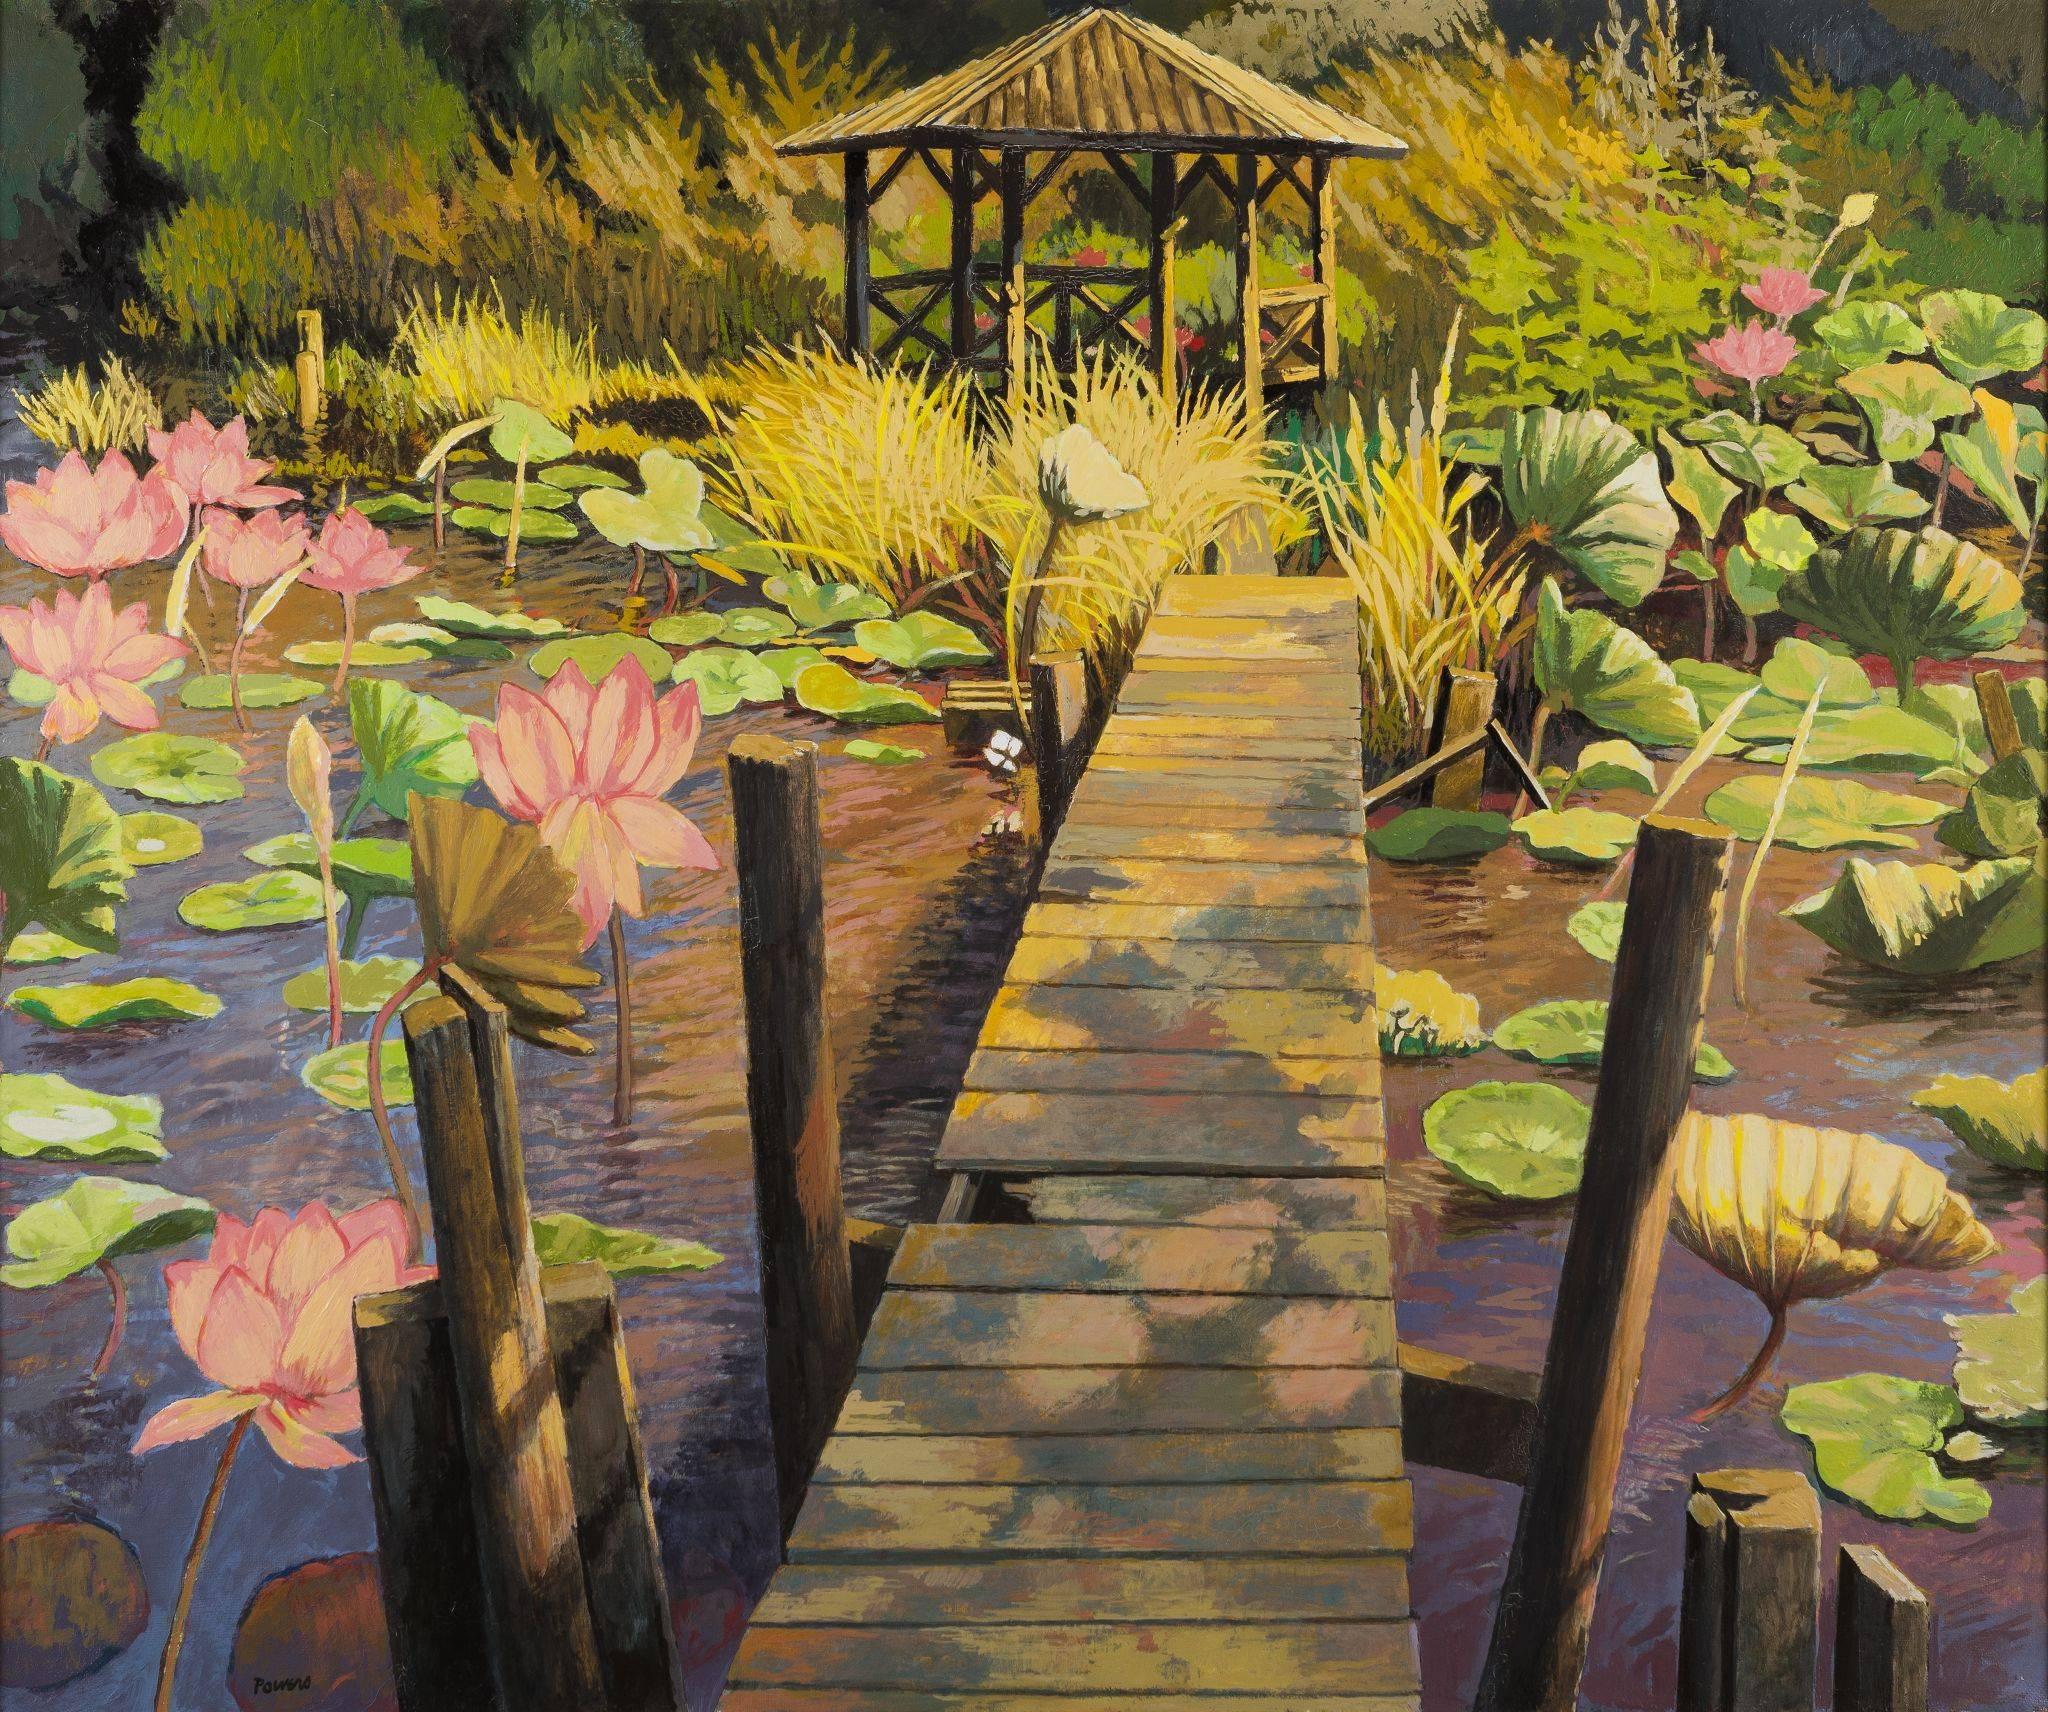 Landscape Painting Anne Lyman Powers - Jardin de lotus